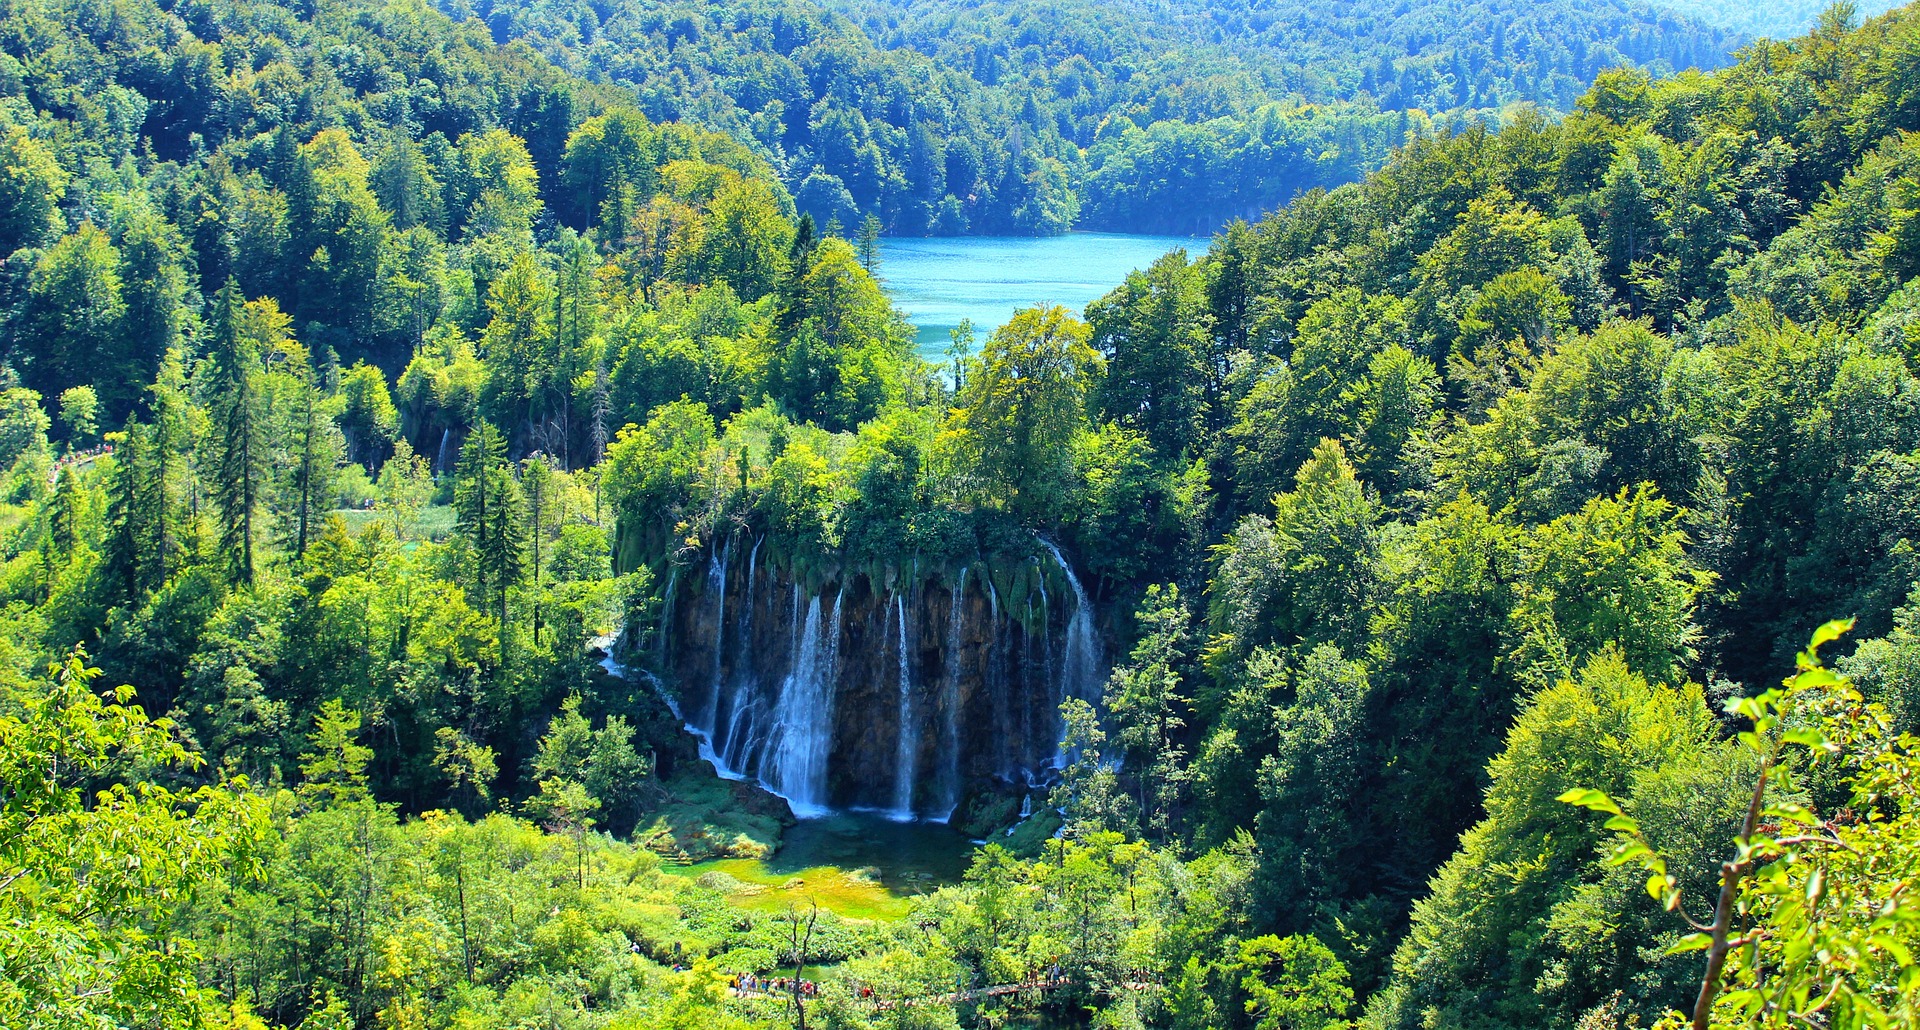 Nacionalni parkovi u Hrvatskoj